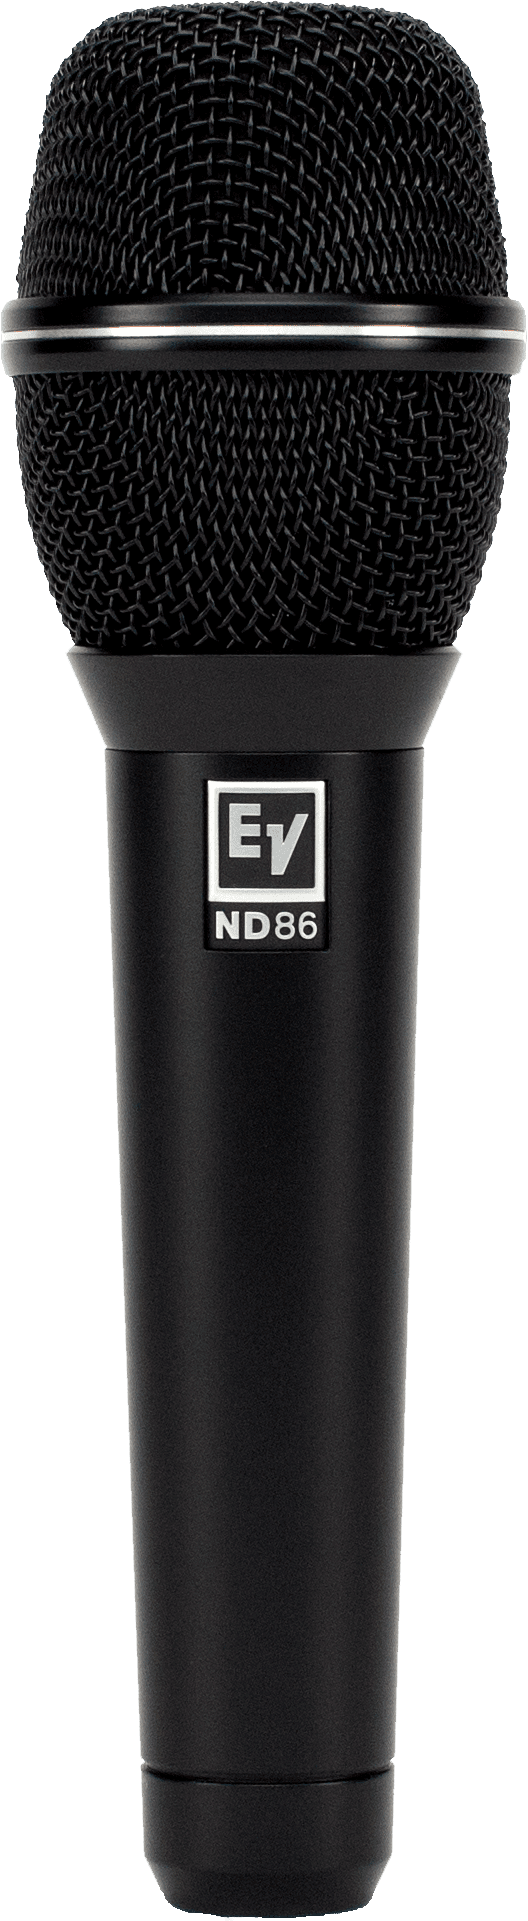 Electro-Voice EV ND86